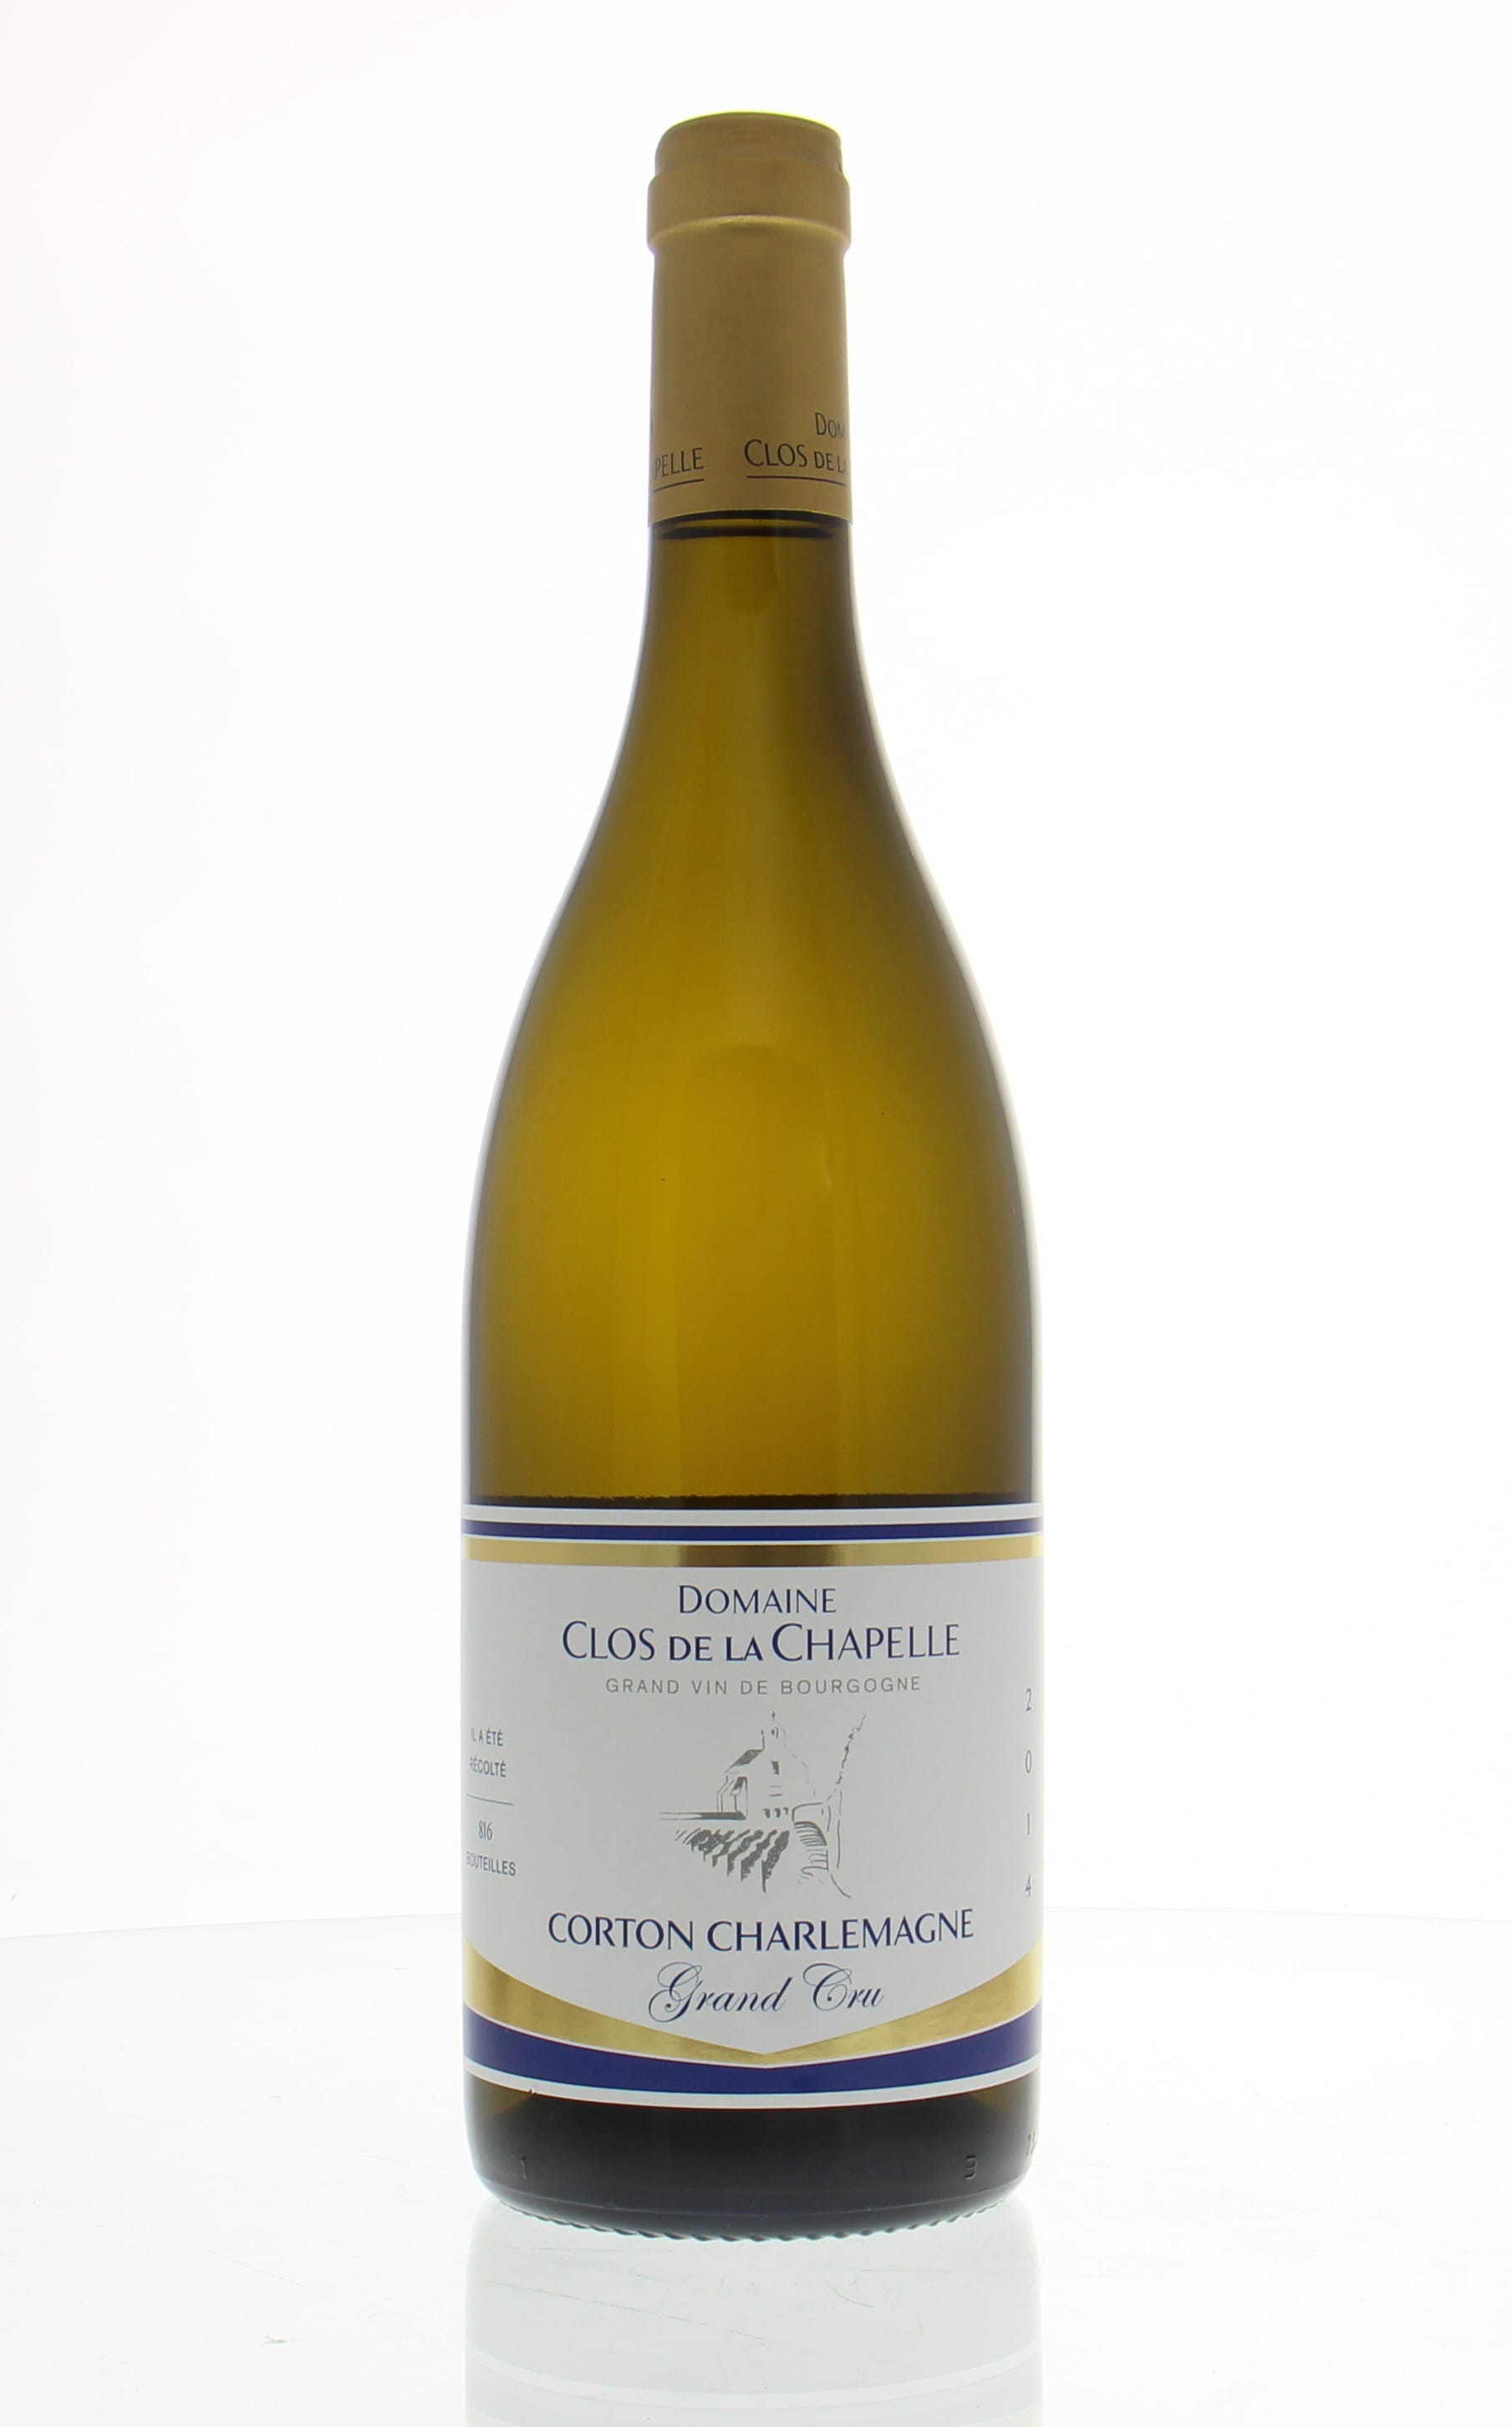 Domaine Clos de la Chapelle - Corton Charlemagne 2014 Perfect